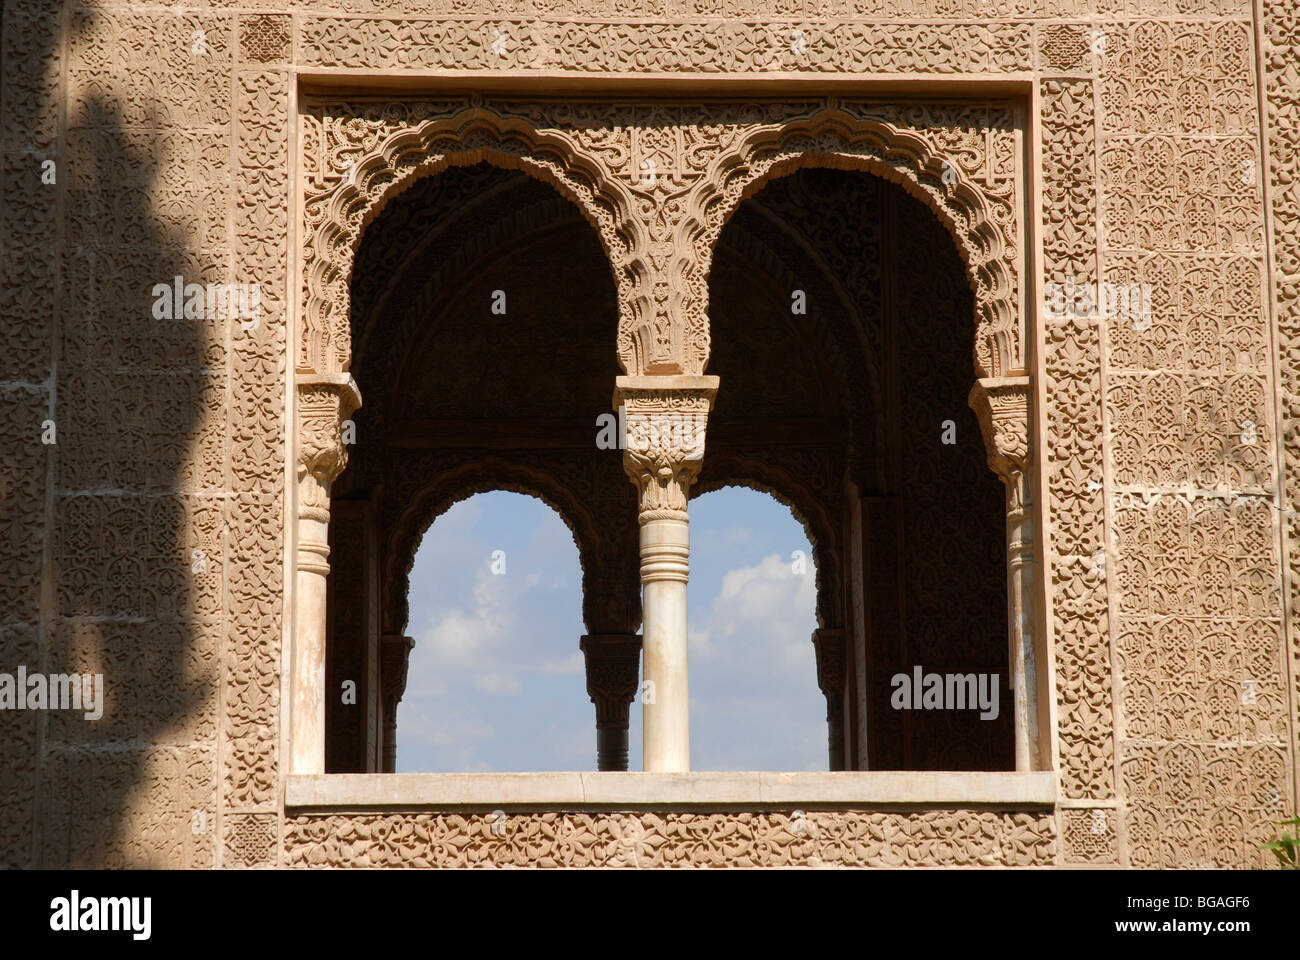 Ricamente decorado con estuco y ventanas abiertas en el pórtico de la Torre de las Damas, la Torre de Las Damas, Partal, La Alhambra, Granada, Andalucía, España Foto de stock